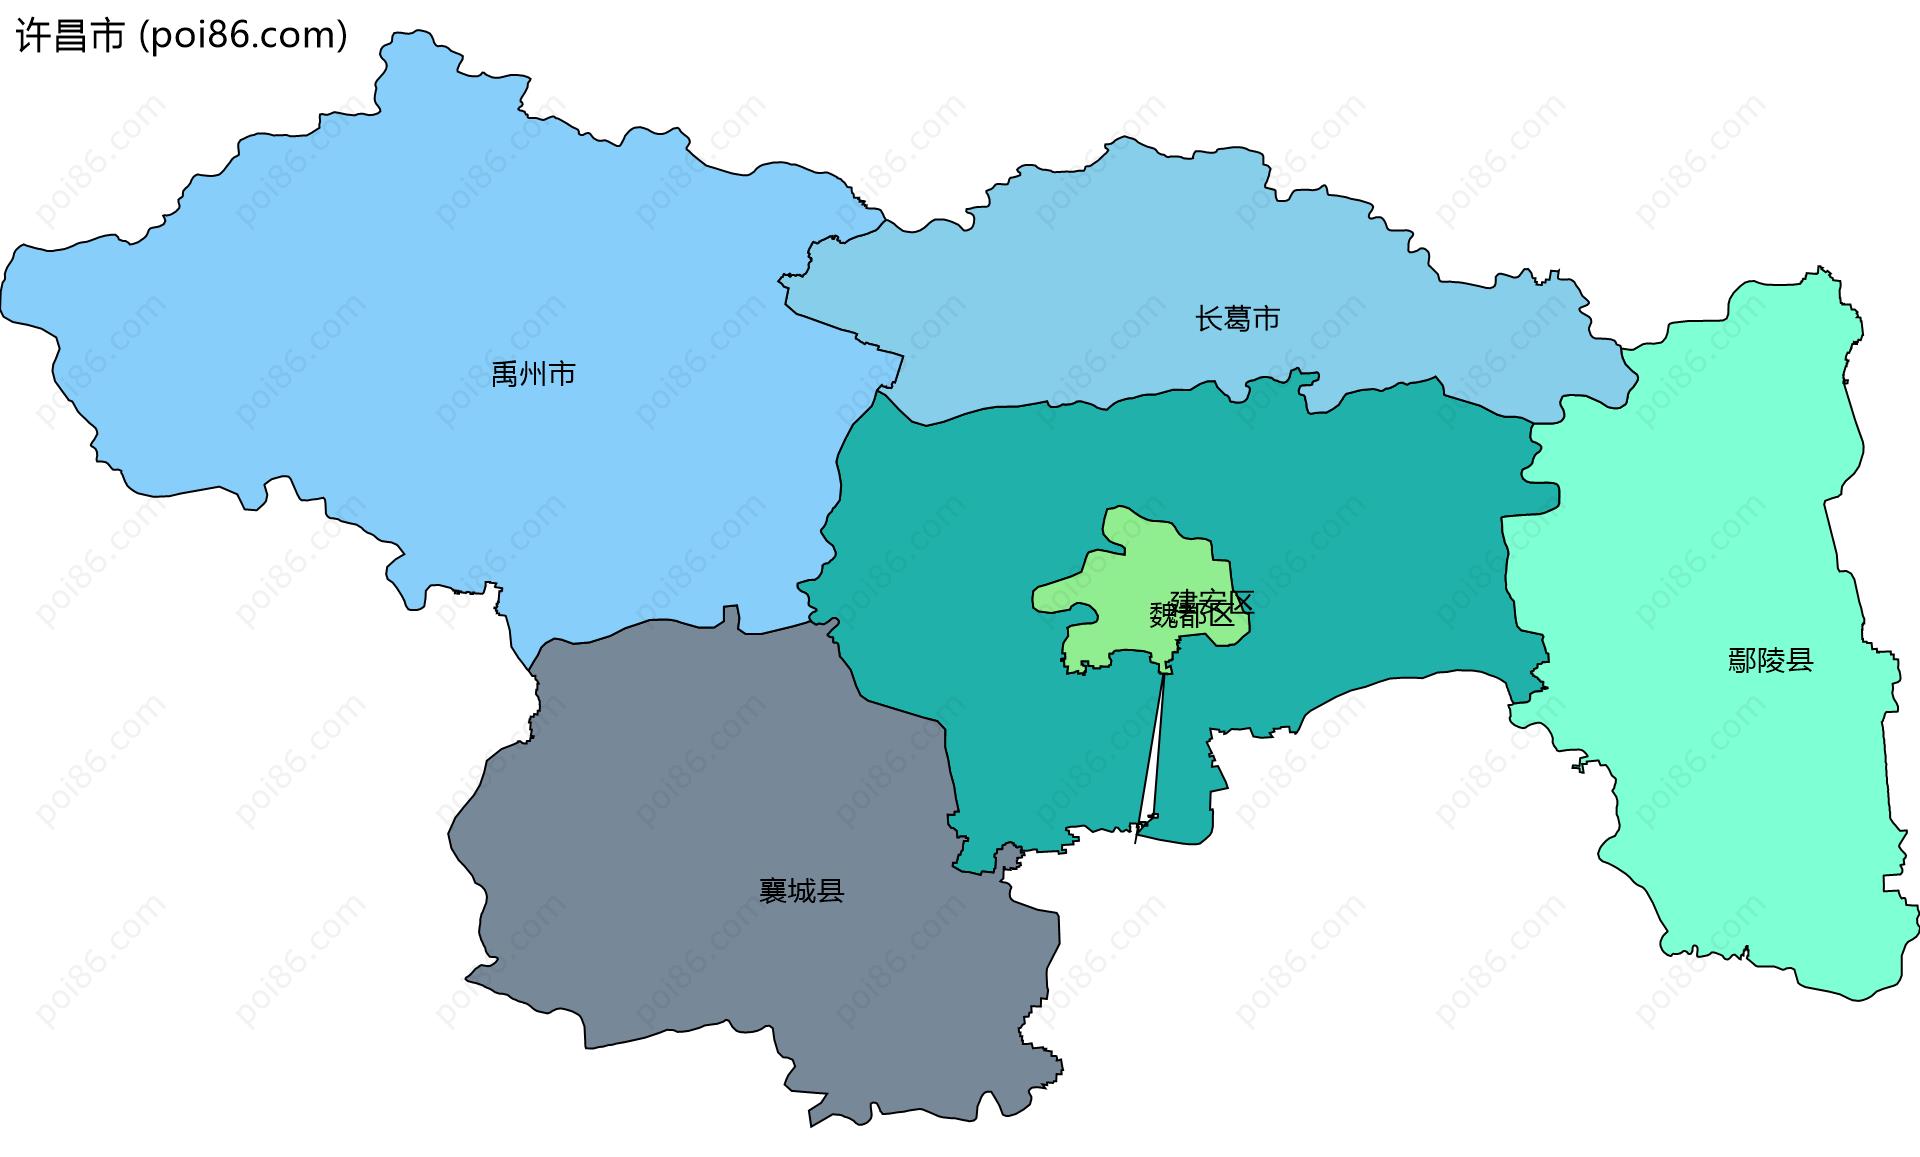 许昌市边界地图